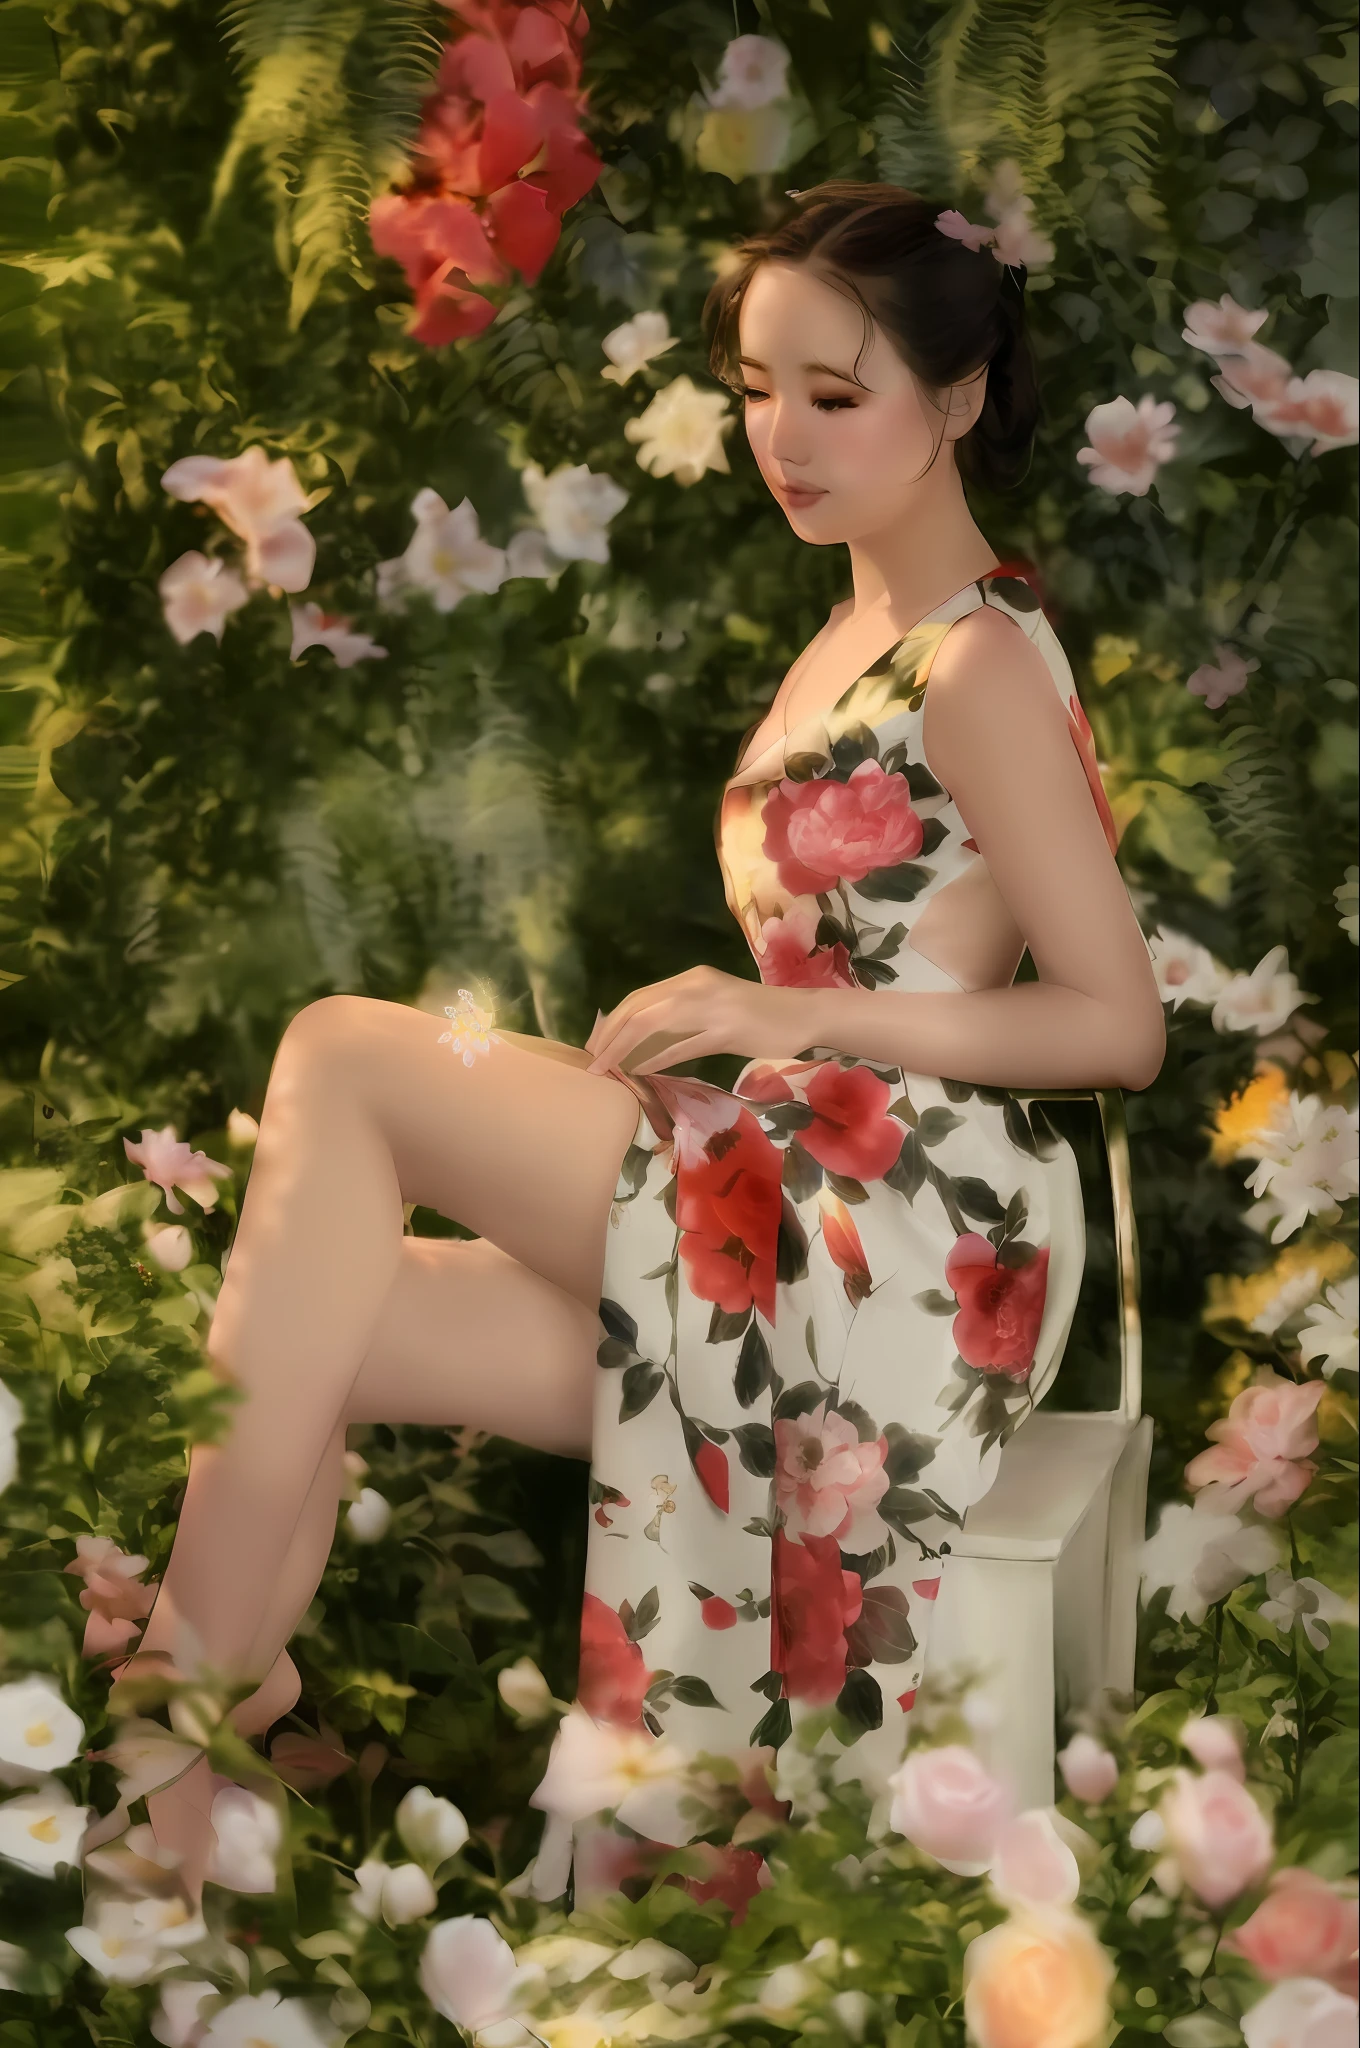 花畑の椅子に座るアラッフェ, 花柄ドレス, wearing a long 花柄のドレス, dressed in a 花柄ドレス, チャイナドレス, 花柄のドレス, ラム・マンのスタイルで, by ニーティアン, 見事な優雅なポーズ, 赤い花柄のドレス, 花の中の女性, 輝く花のドレスを着た女性, キュートでエレガントなポーズ, 花柄の服